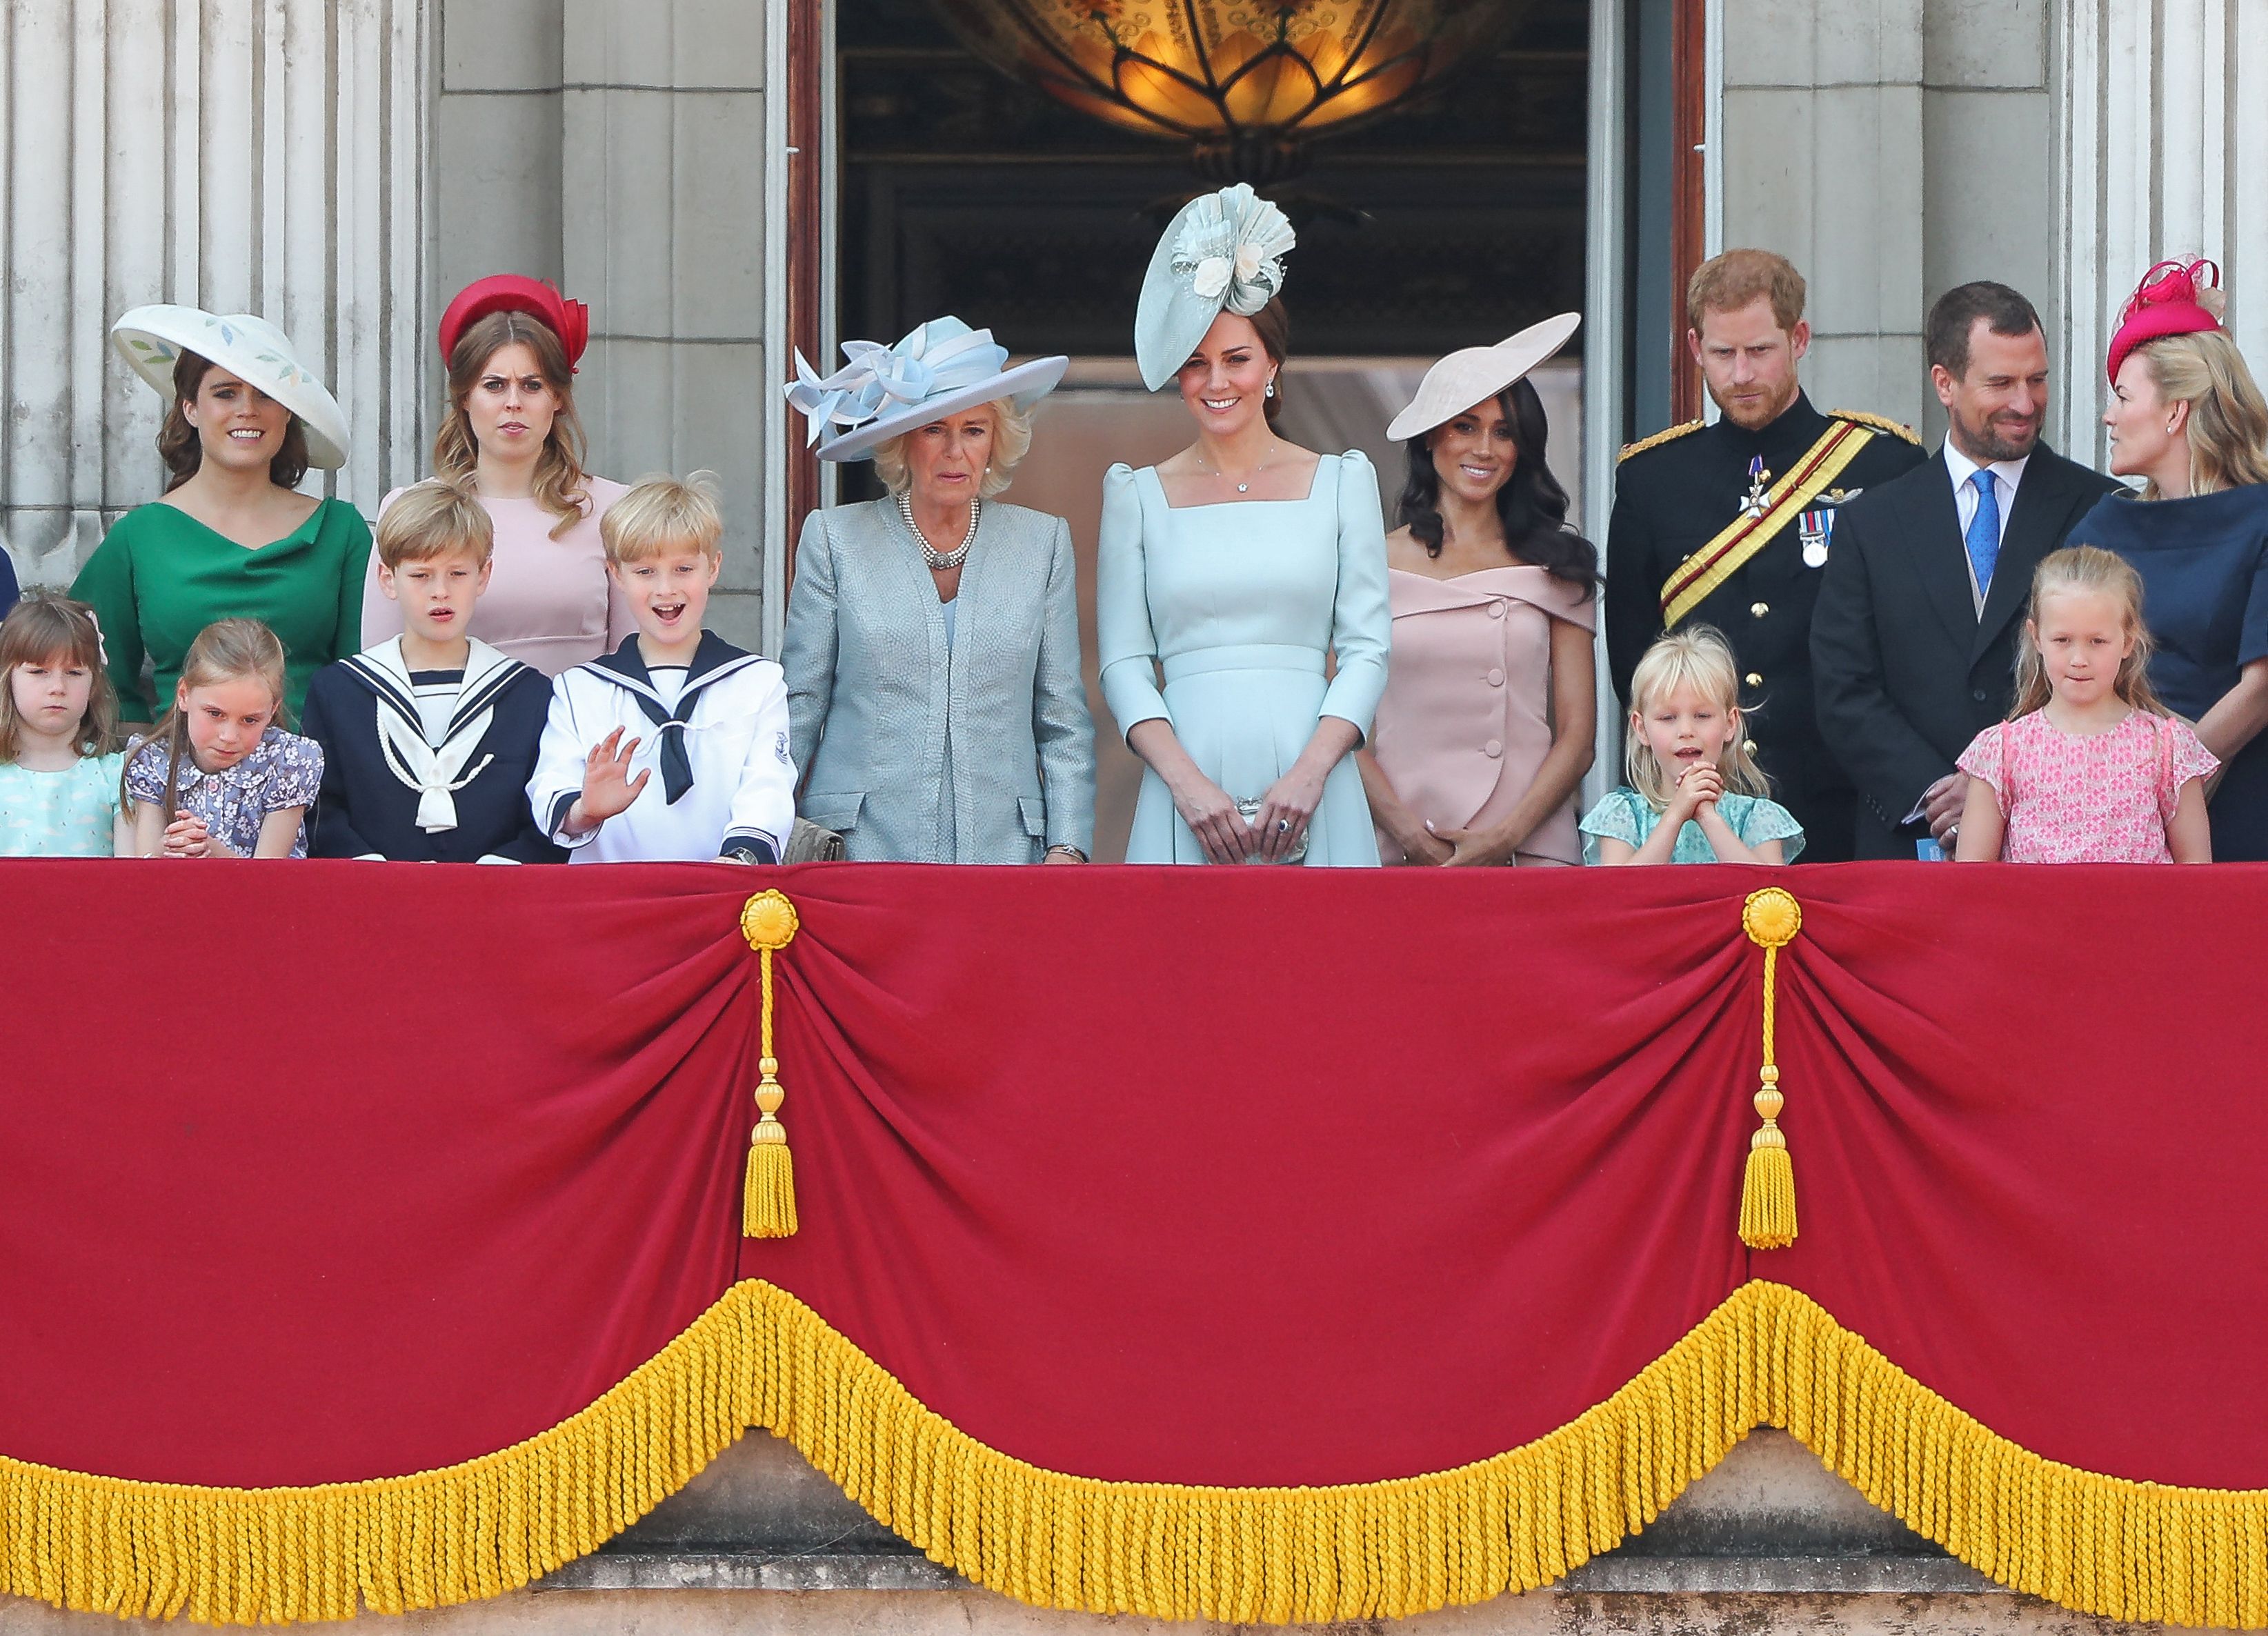 El príncipe Harry recuerda el “silencio sepulcral” que siguió a la broma de Meghan en Trooping the Colour